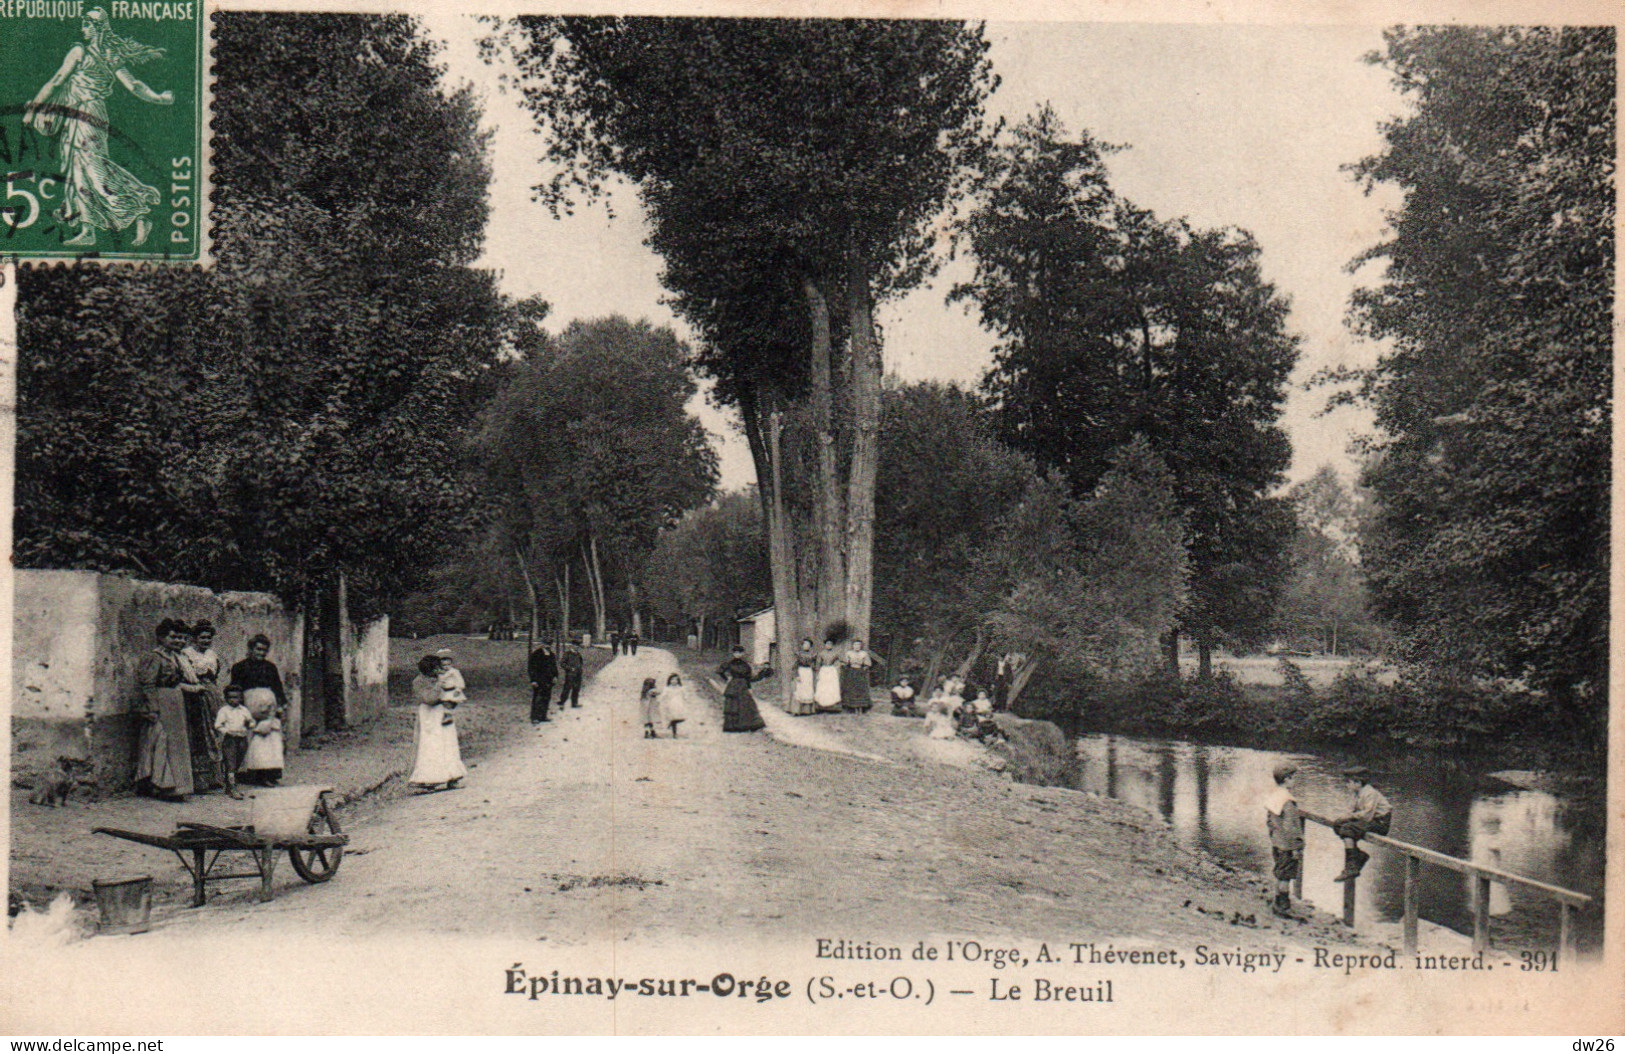 Epinay-sur-Orge (Seine-et-Oise, Essonne) Le Breuil - Edition A. Thévenet - Epinay-sur-Orge